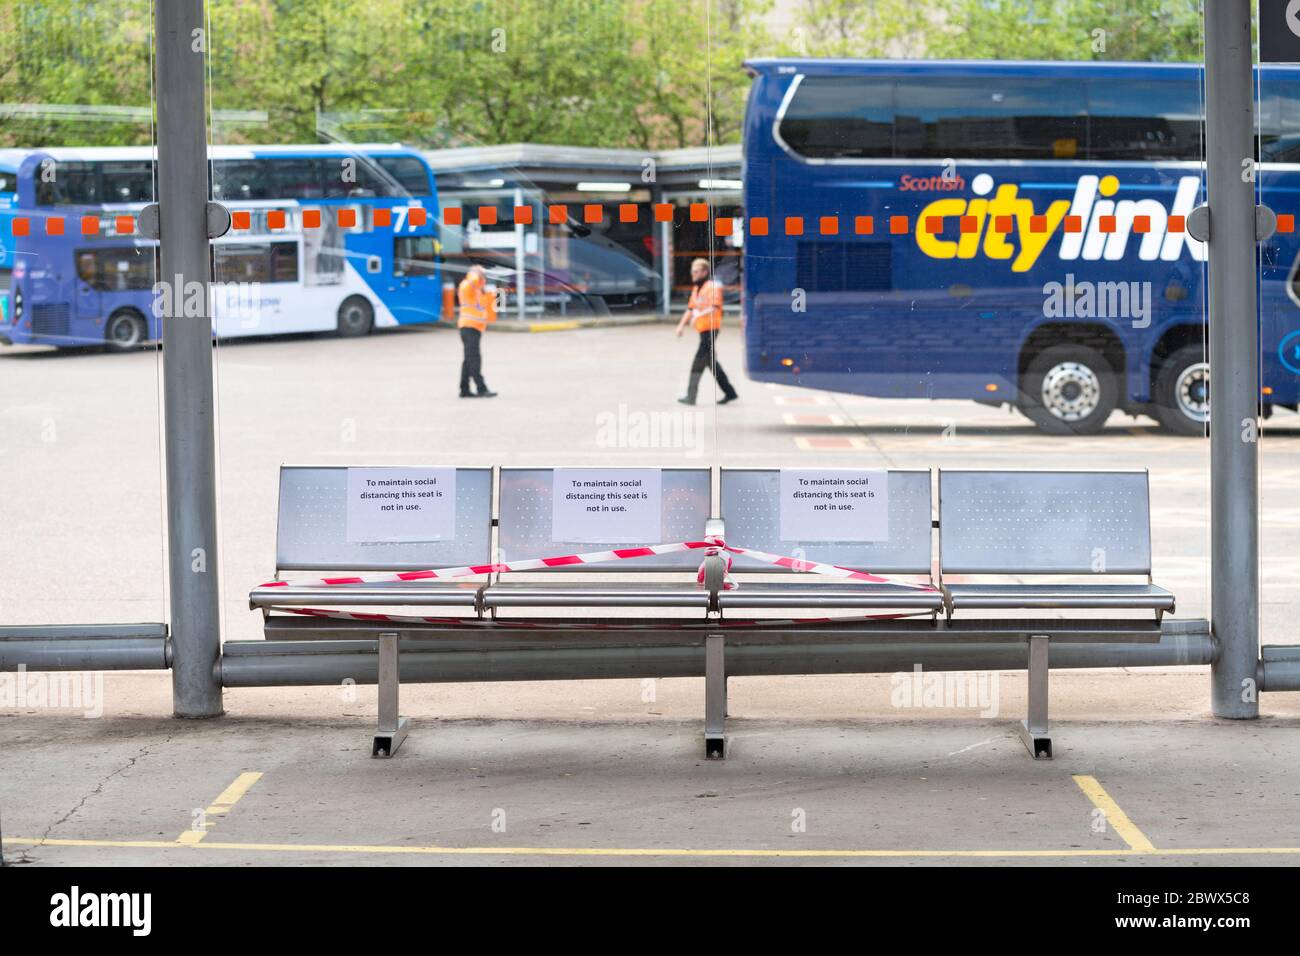 Buchanan Bus Station, Glasgow, Schottland, Großbritannien. 3. Juni 2020. Neueste soziale Distanzierungsmaßnahmen in Kraft Buchanan Busbahnhof. Die Anzahl der nutzbaren Sitze wurde reduziert, um eine sichere soziale Distanz zu ermöglichen, und die Linien in Buspositionen wurden markiert, um die Richtlinien für soziale Distanz hervorzuheben, wodurch auch die Anzahl der Personen in jeder Haltung begrenzt wird. Wenn die Zahl der Reisenden zunimmt, werden die Marschplätze eingesetzt, um die Mitarbeiter zu Überlaufbereichen zu leiten. Kredit: Kay Roxby/Alamy Live News Stockfoto